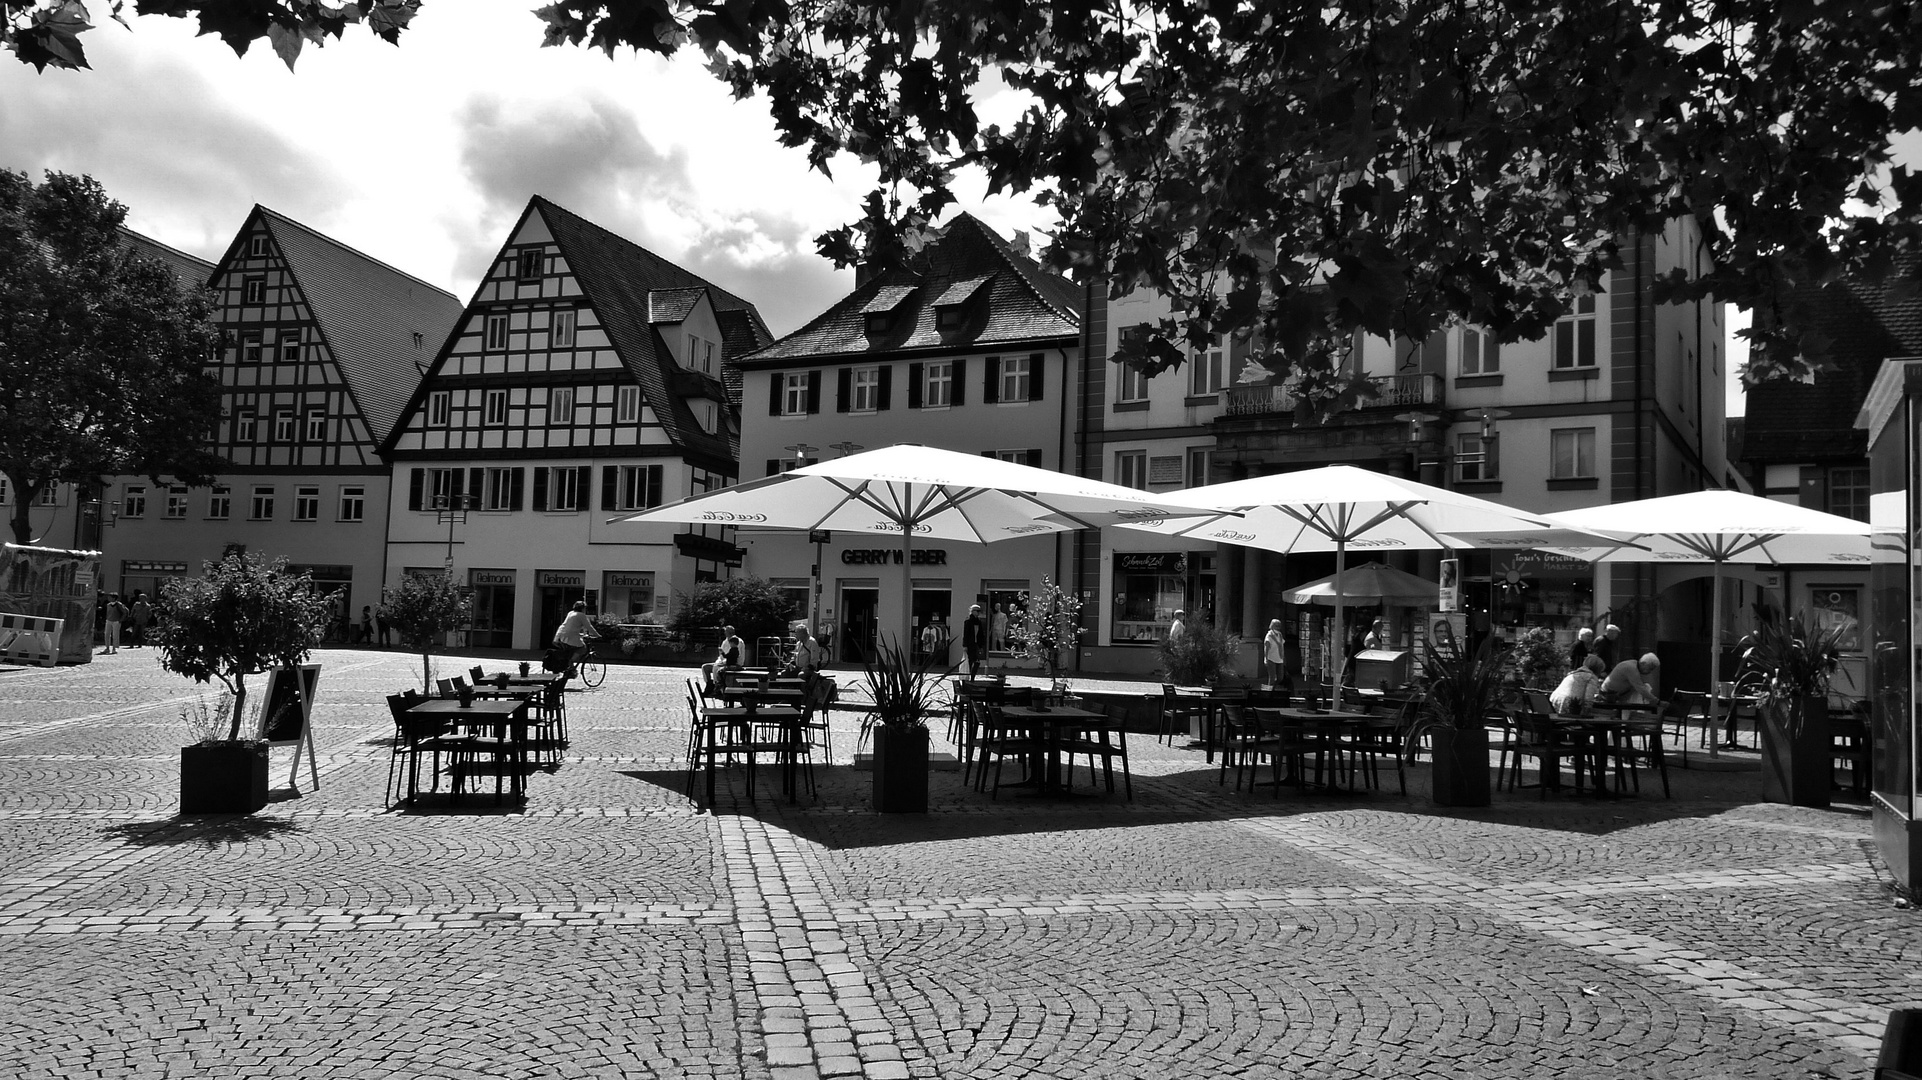 Schwabach eine Stadt in Mittelfranken.